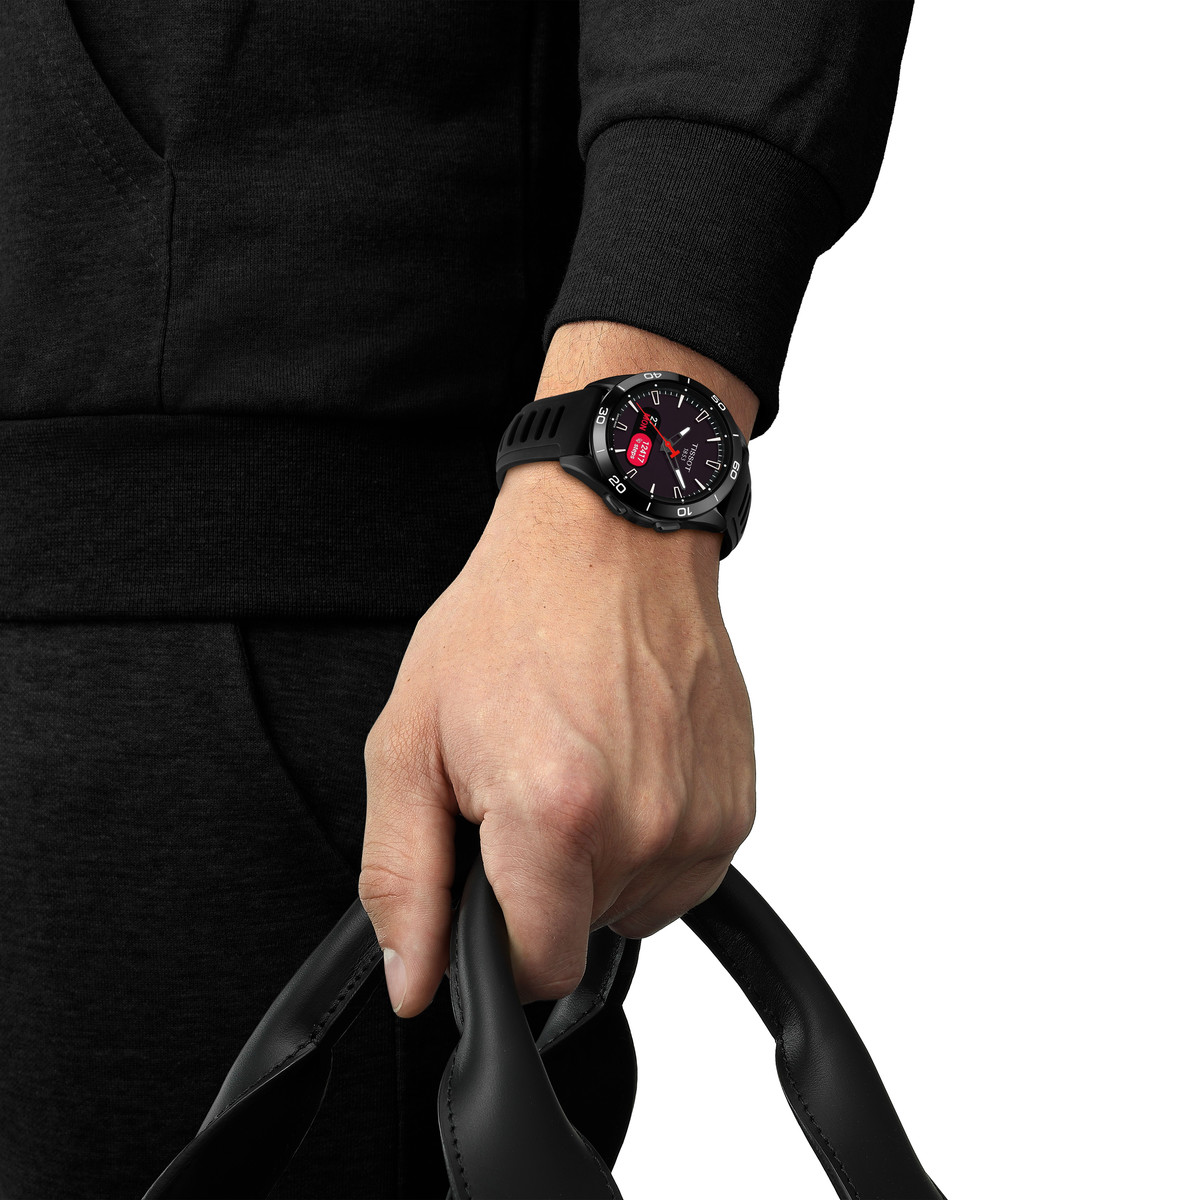 Montre TISSOT Touch collection homme solaire, bracelet silicone noir - vue porté 1